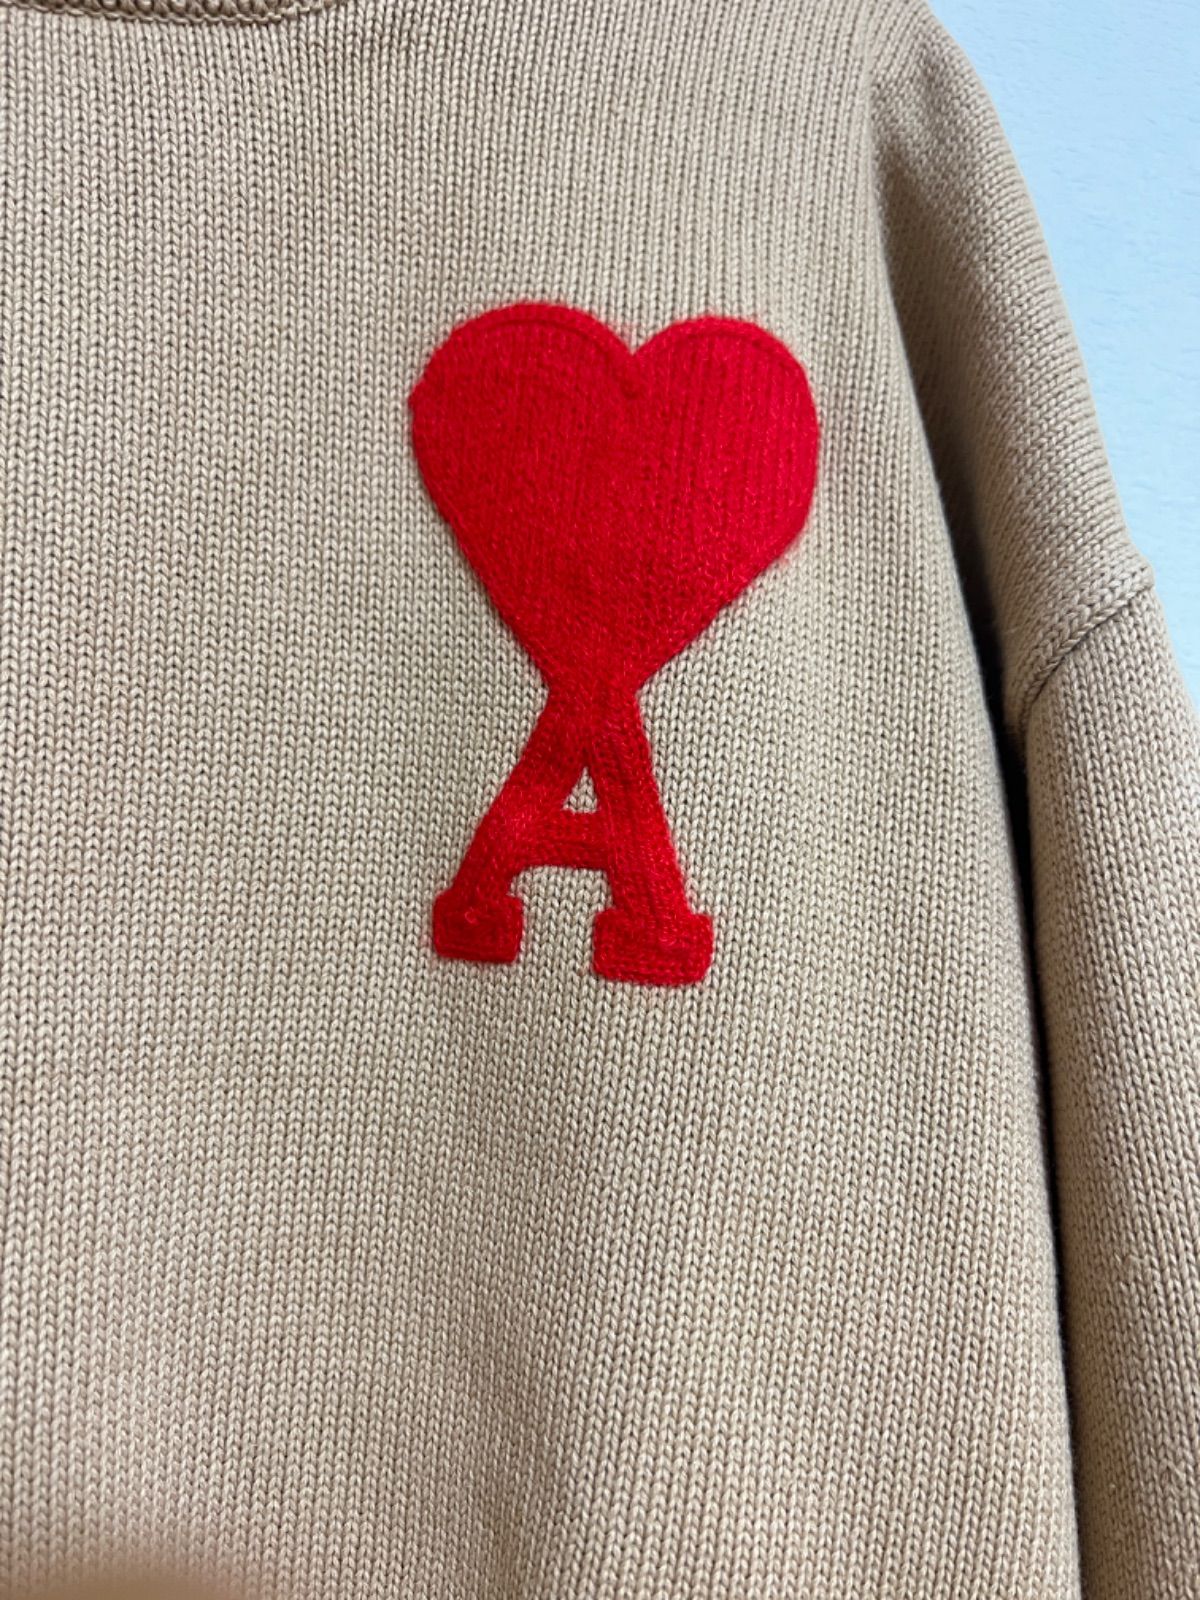 新品 amiparis AMI PARIS ニット セーター - SP - メルカリ